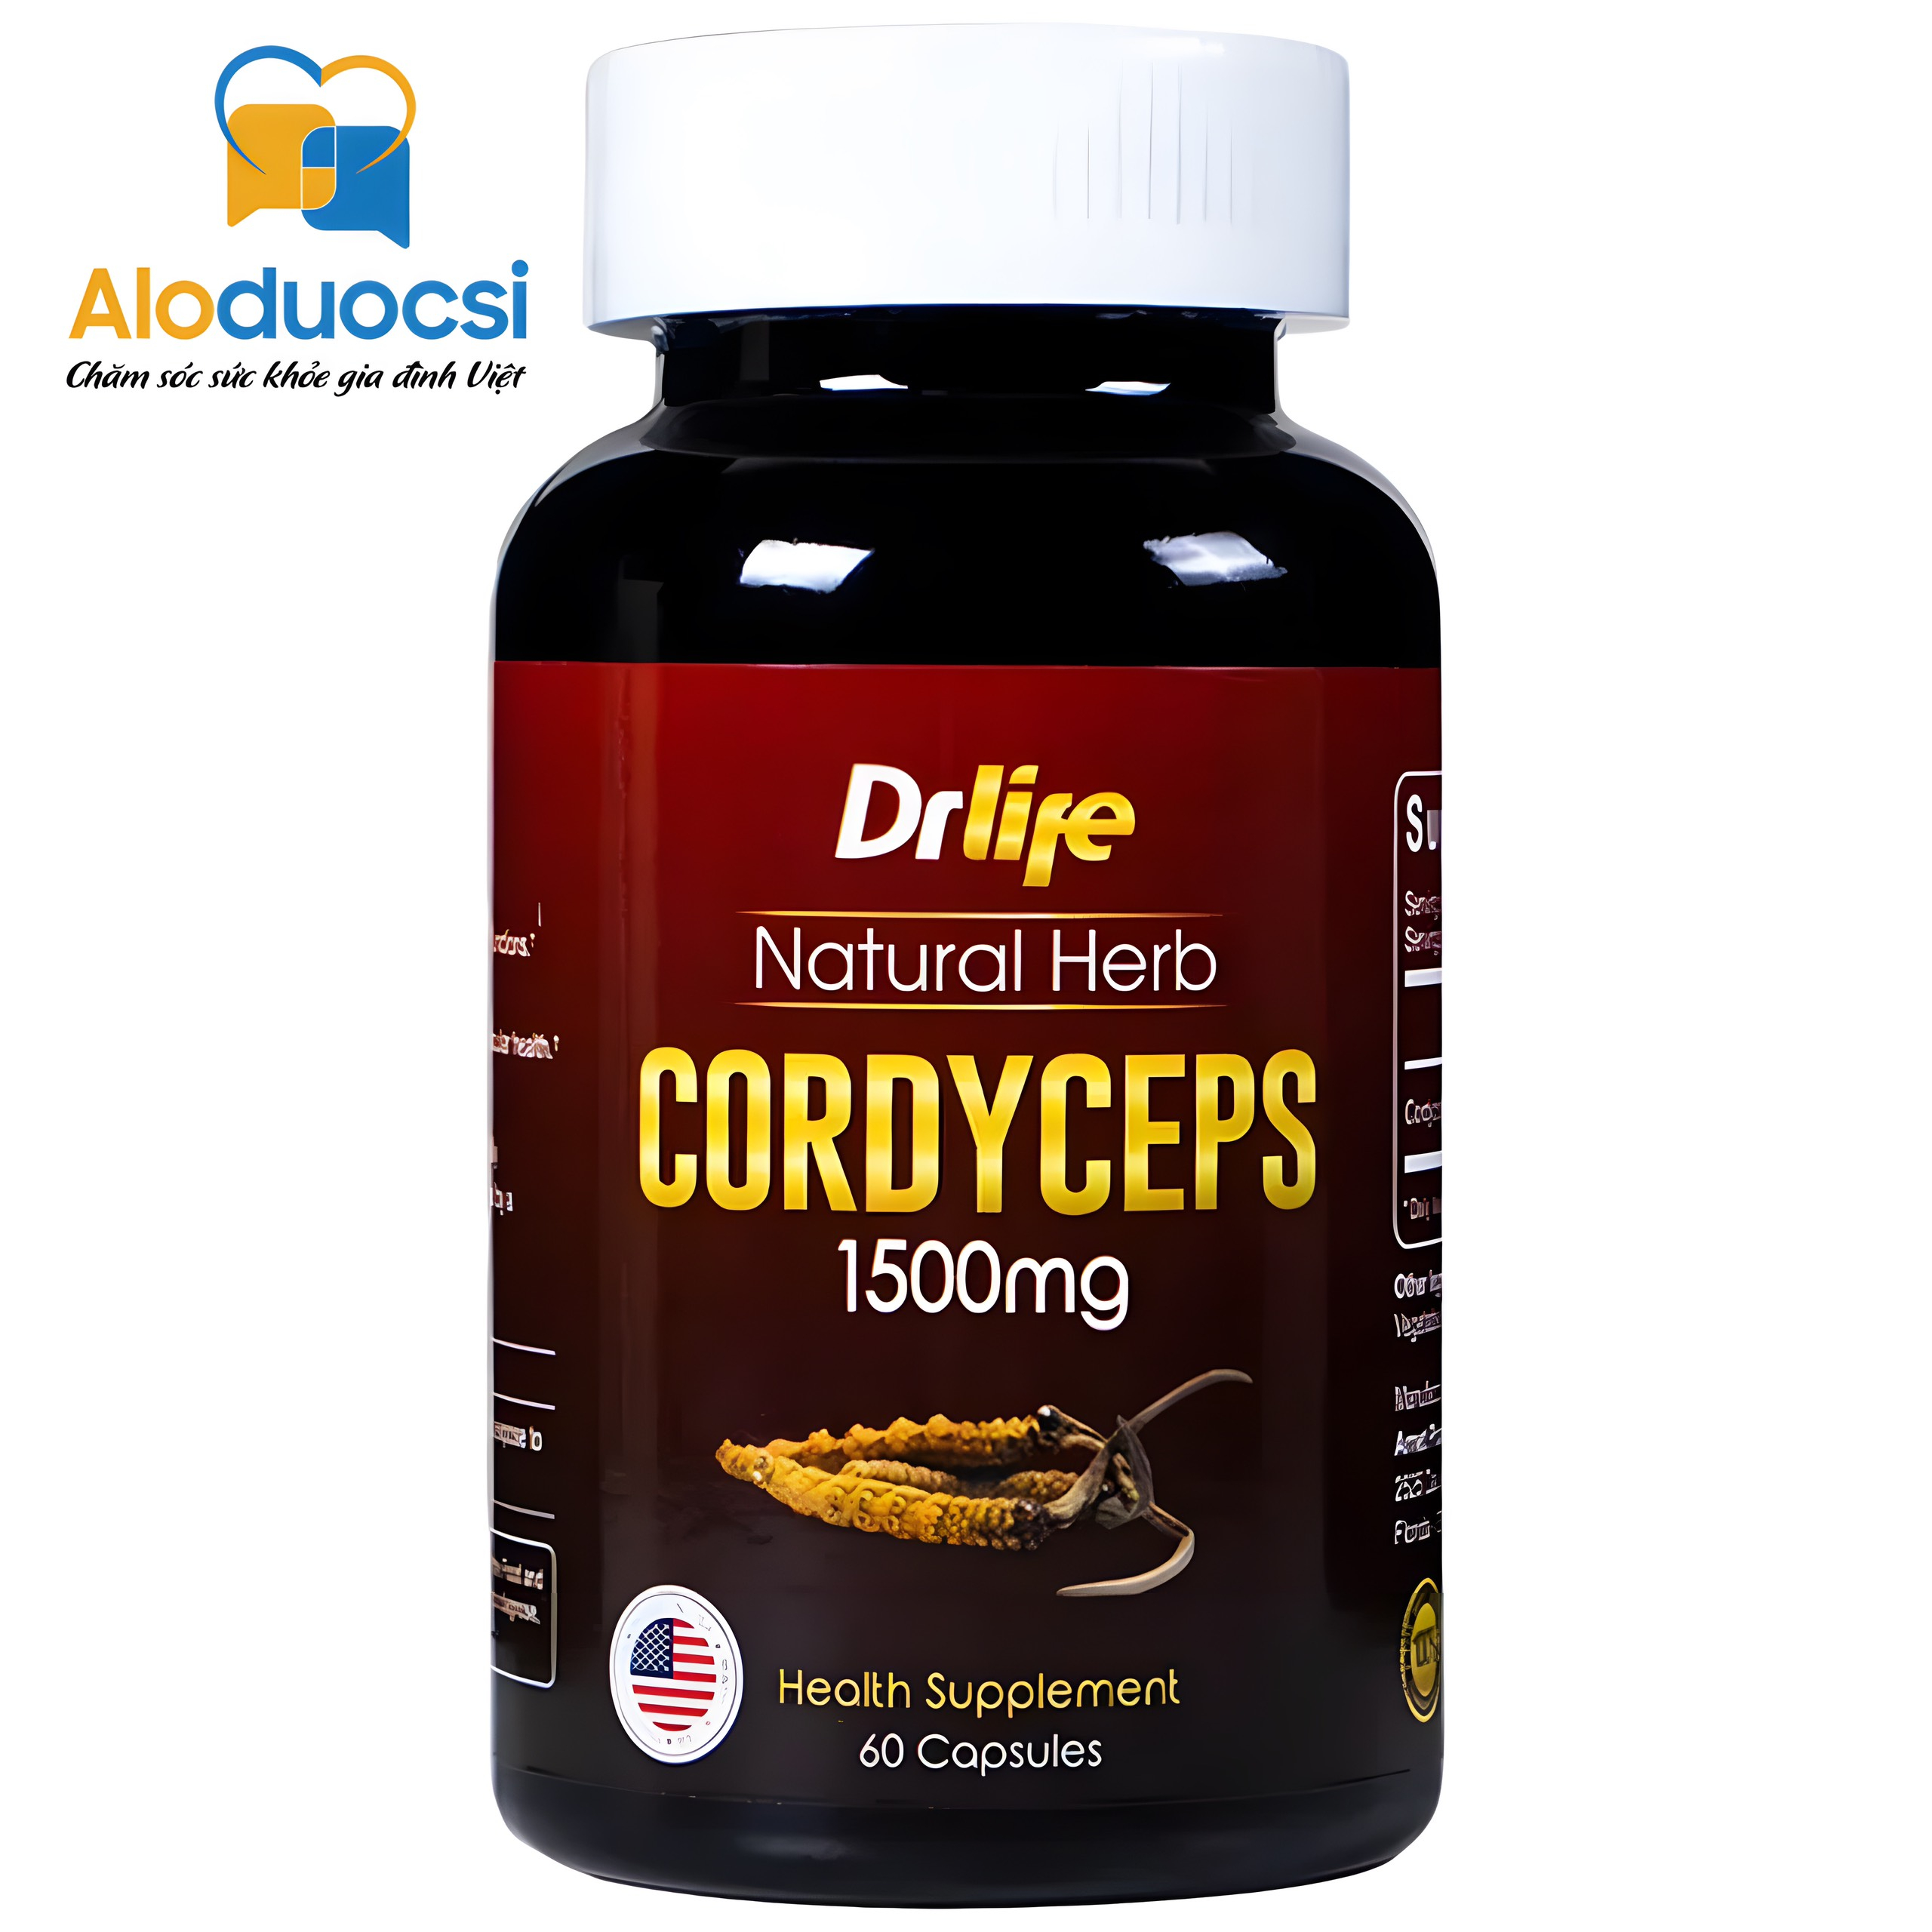 Viên uống Drlife Natural Herb Cordyceps 1500mg Arnet Pharmaceutical giúp bổ phổi, bổ thận (60 viên)